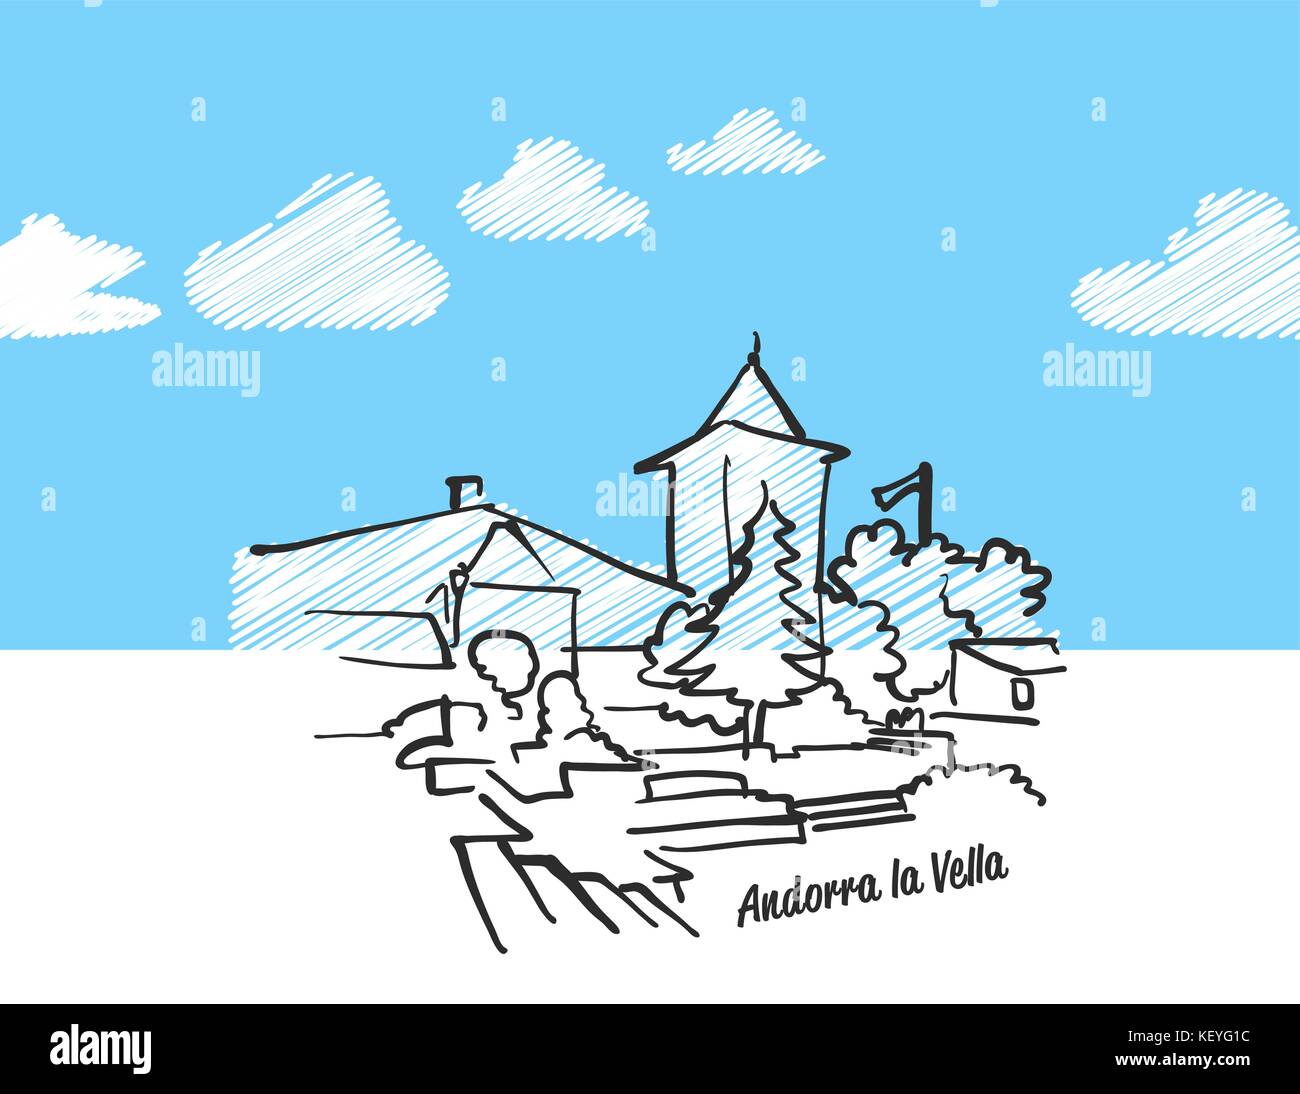 Andorra la Vella berühmte Skyline Skizze. Lineart Zeichnung von Hand. Grußkarte Symbol mit Titel. Vector Illustration Stock Vektor